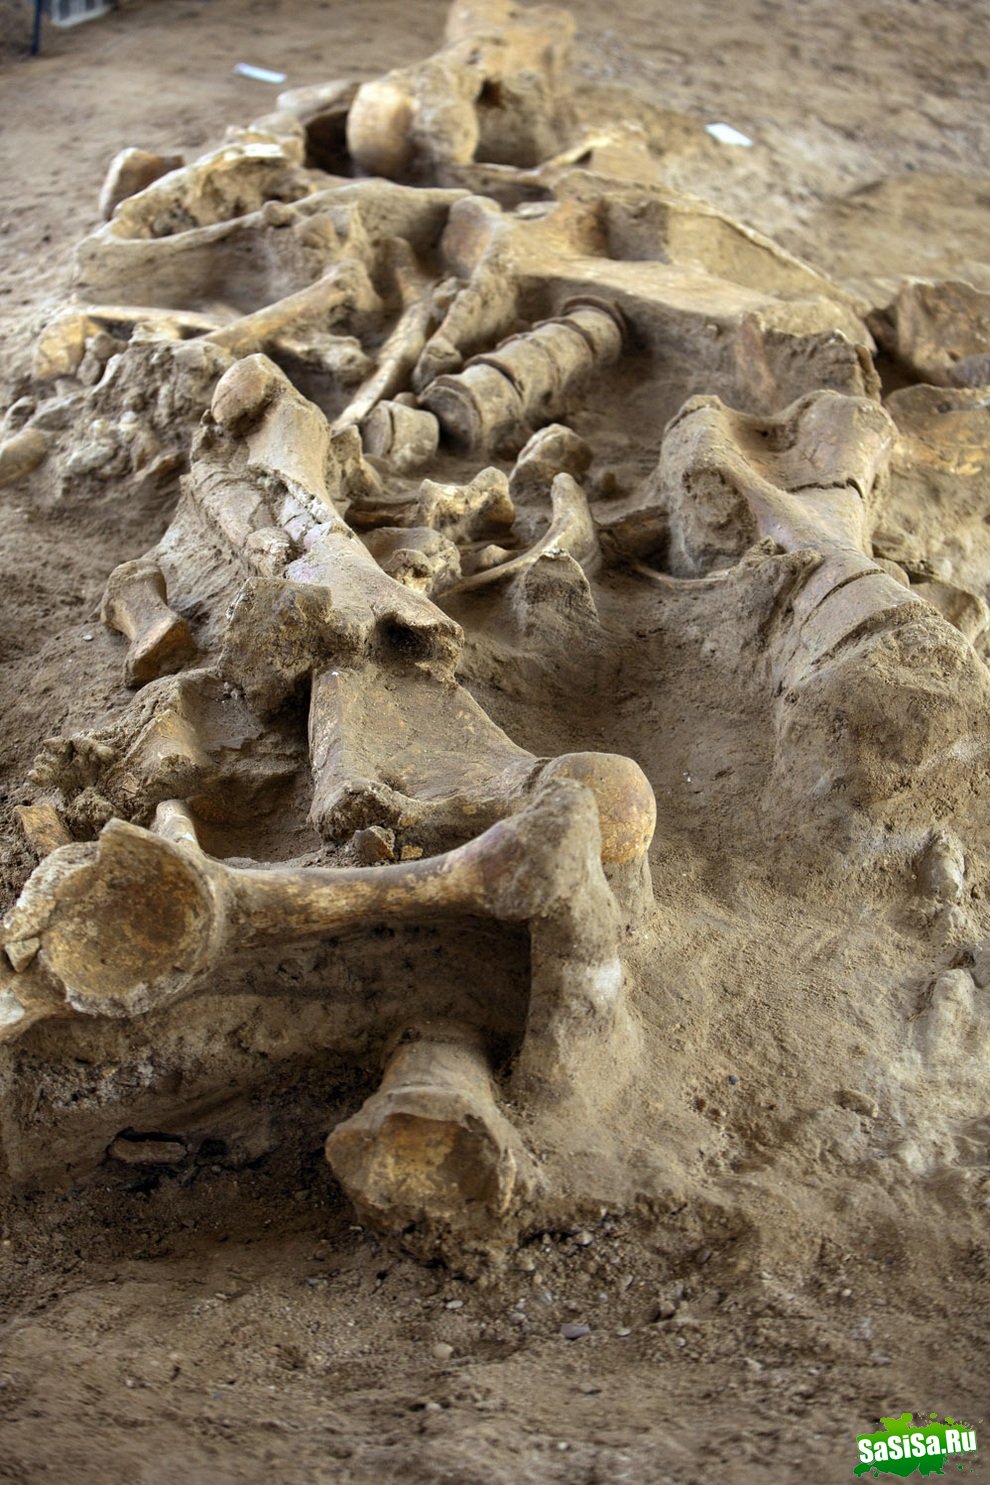 Французские археологи нашли останки мамонта (9 фото)